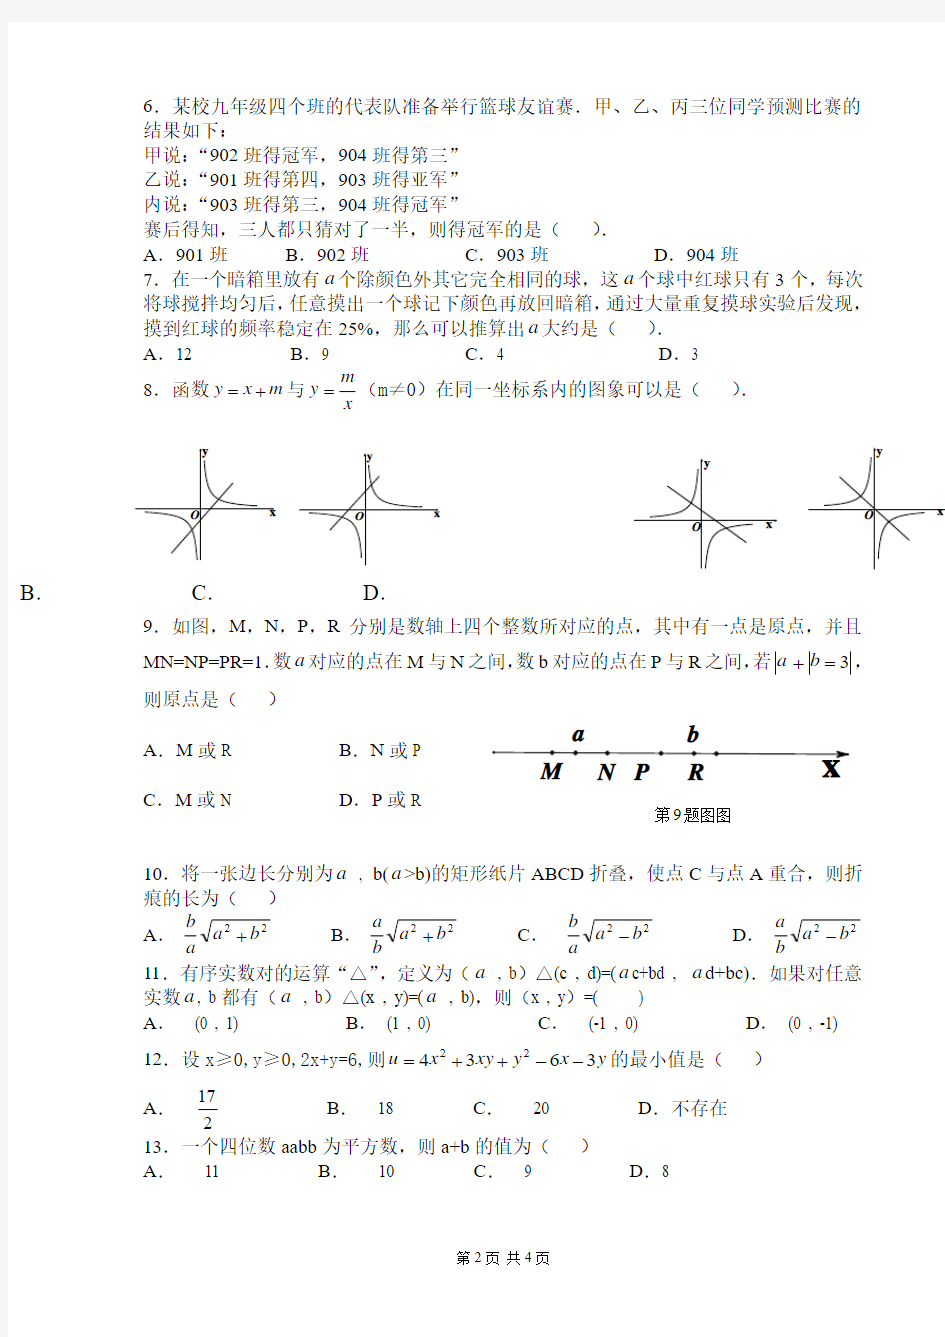 2012年广东省初中数学竞赛初赛试题和答案